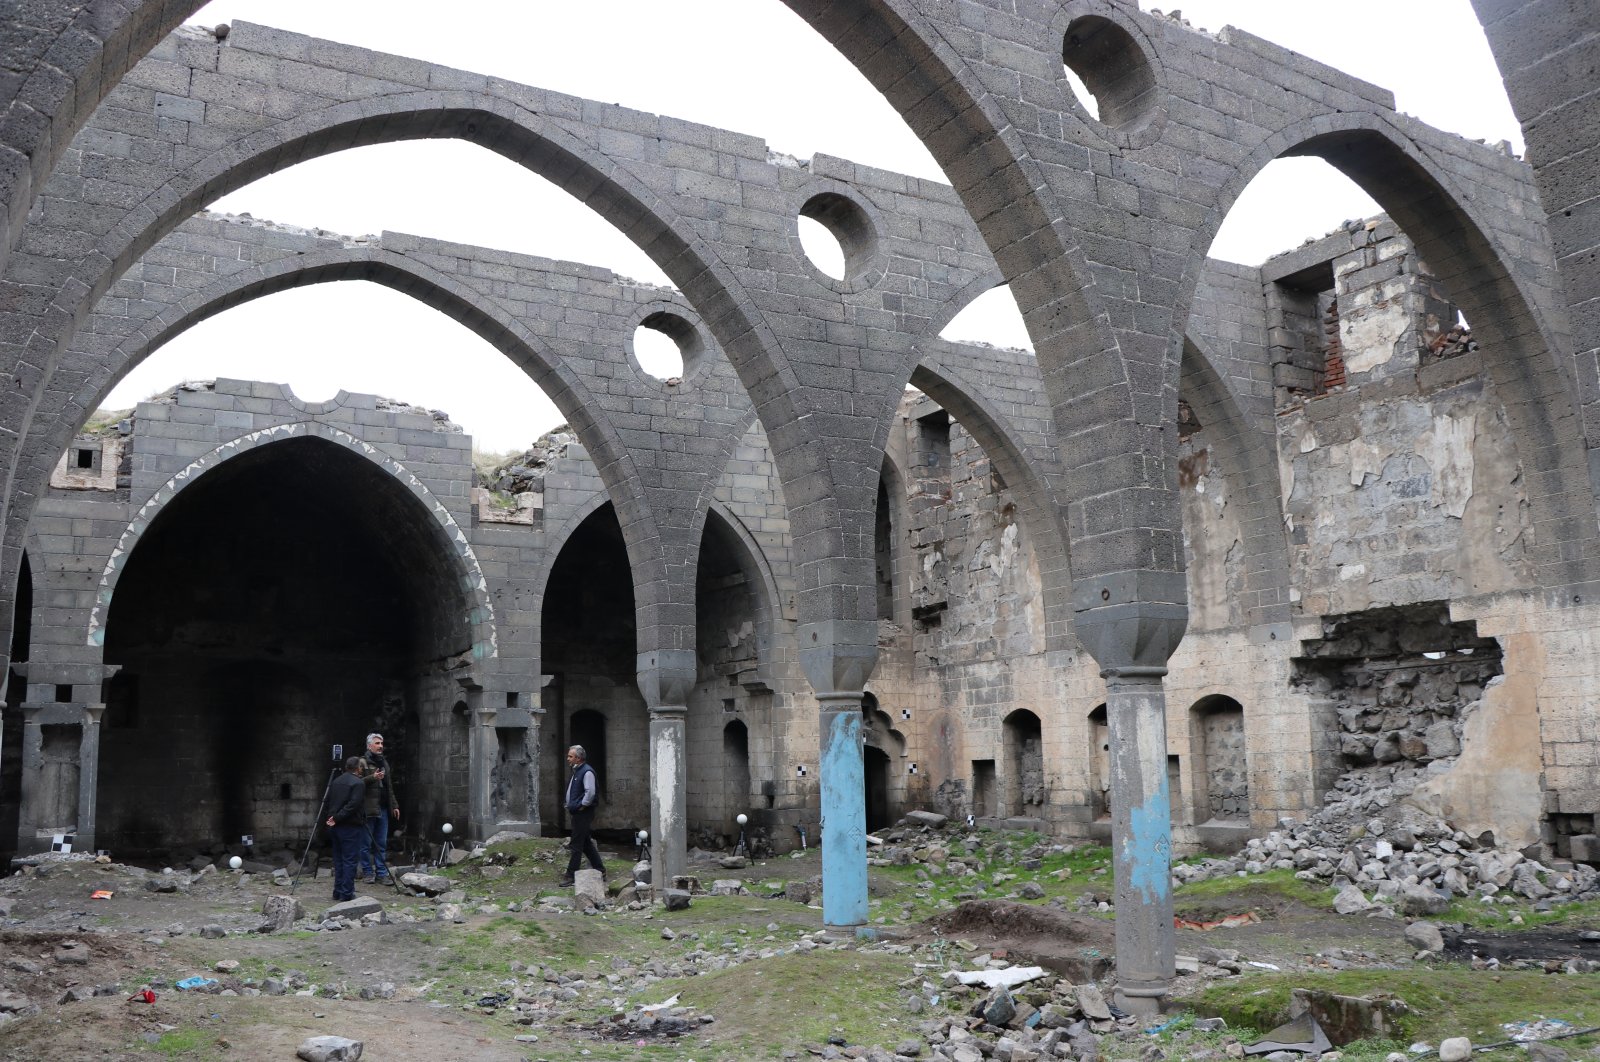 Gereja Armenia kuno di Turki Tenggara akan direnovasi